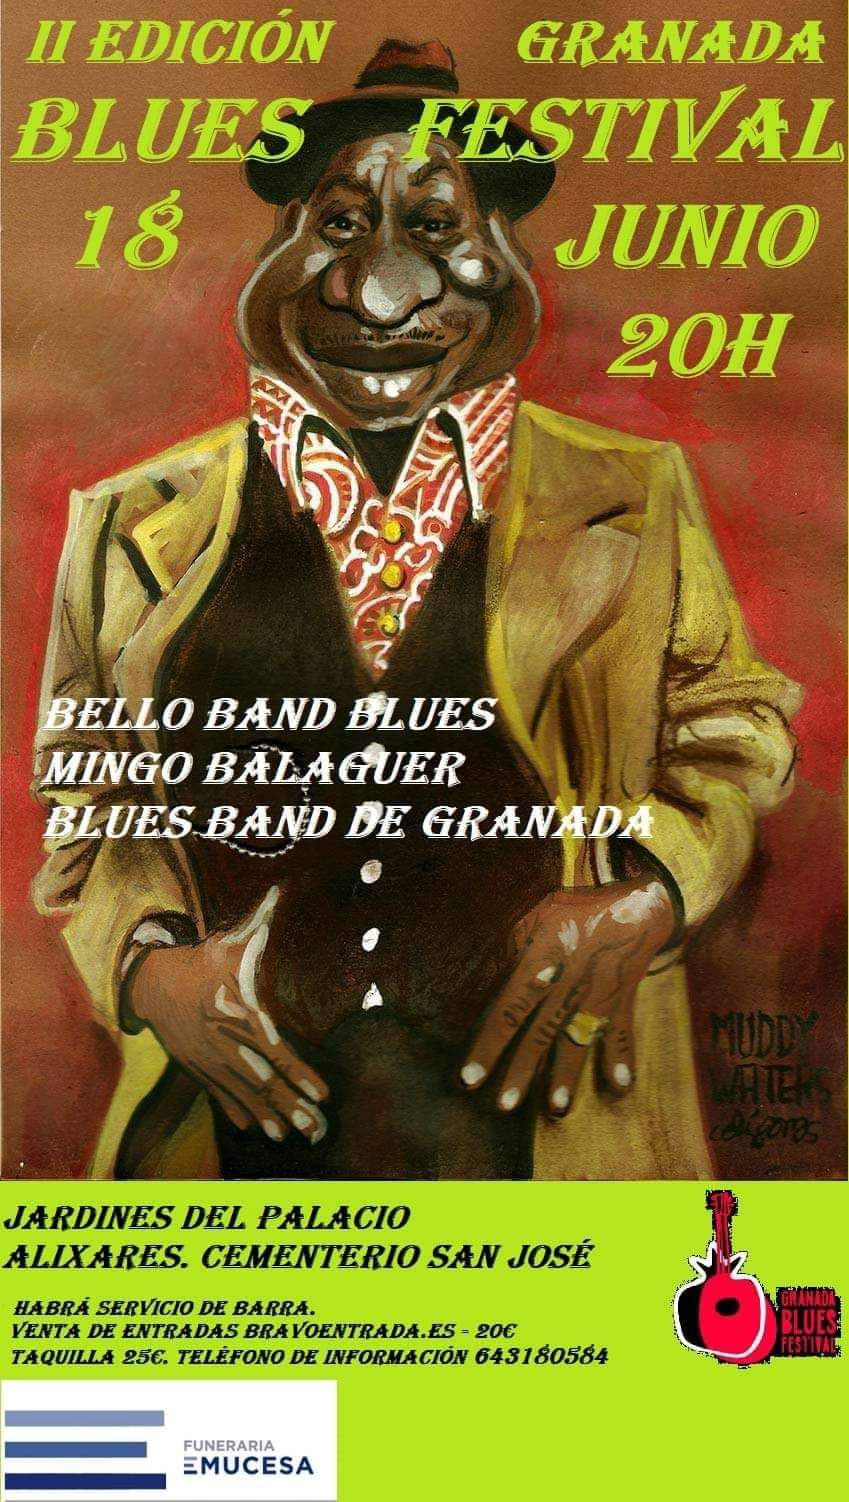 Imagen - II Edición Blues. Granada Festival 2022